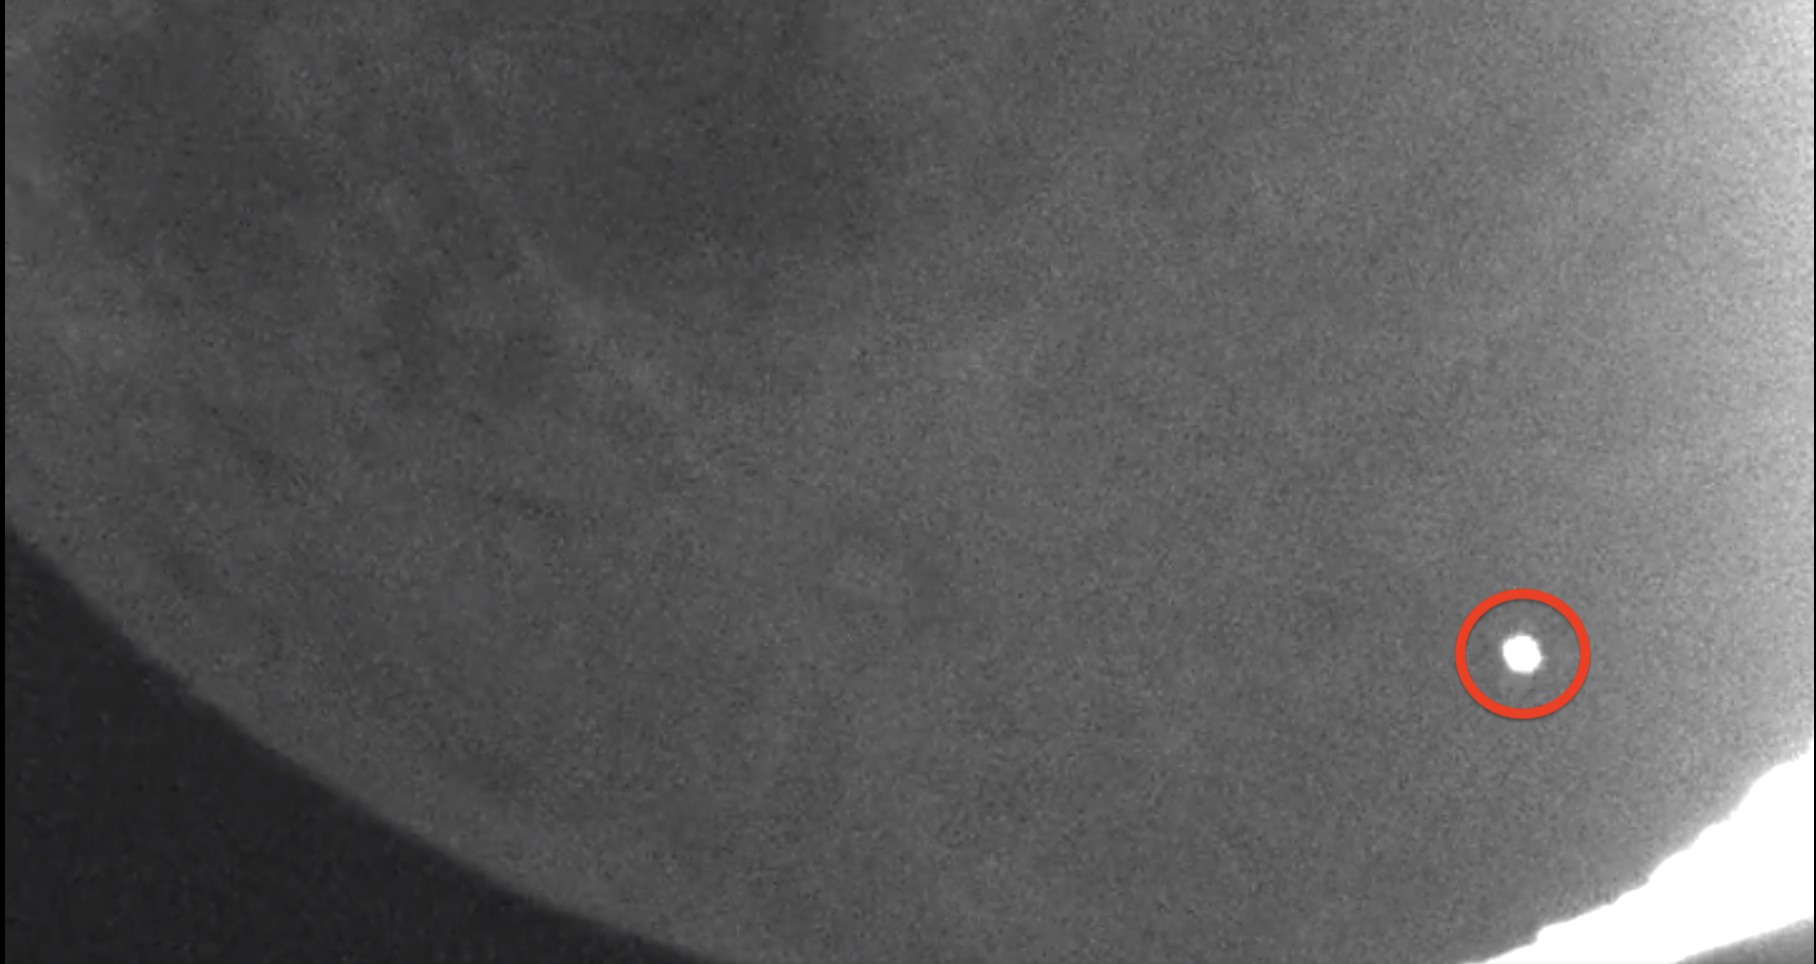 Потрясающее видео показывает падение метеорита на поверхность Луны